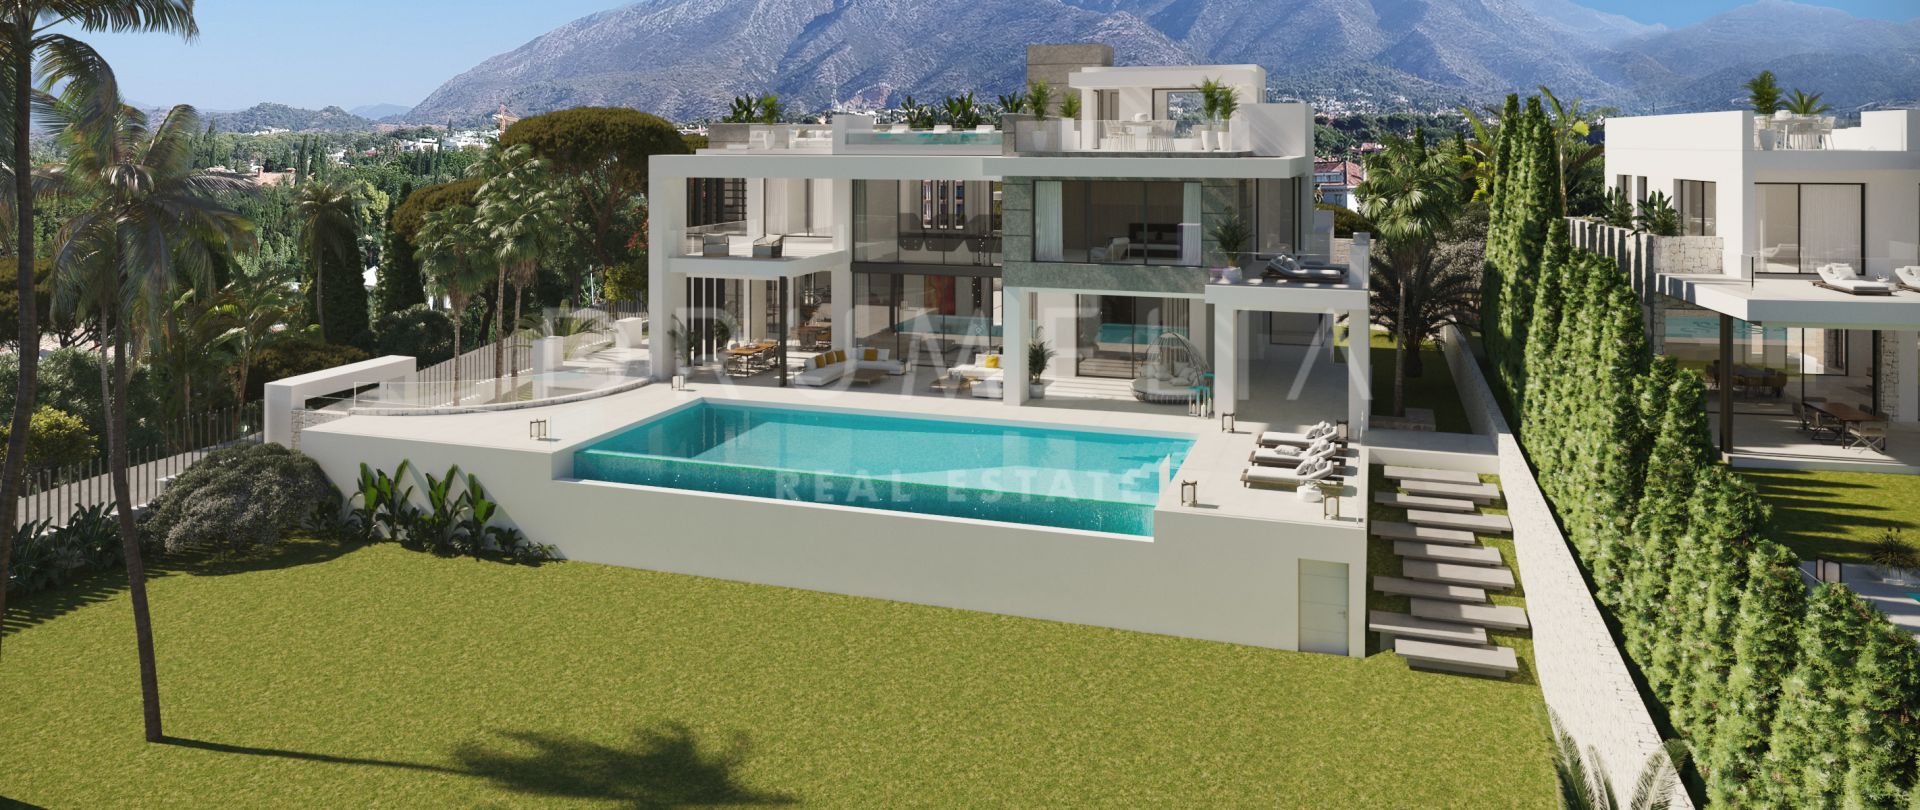 Villa de diseño contemporáneo en venta en Rocio de Nagüeles, Marbella